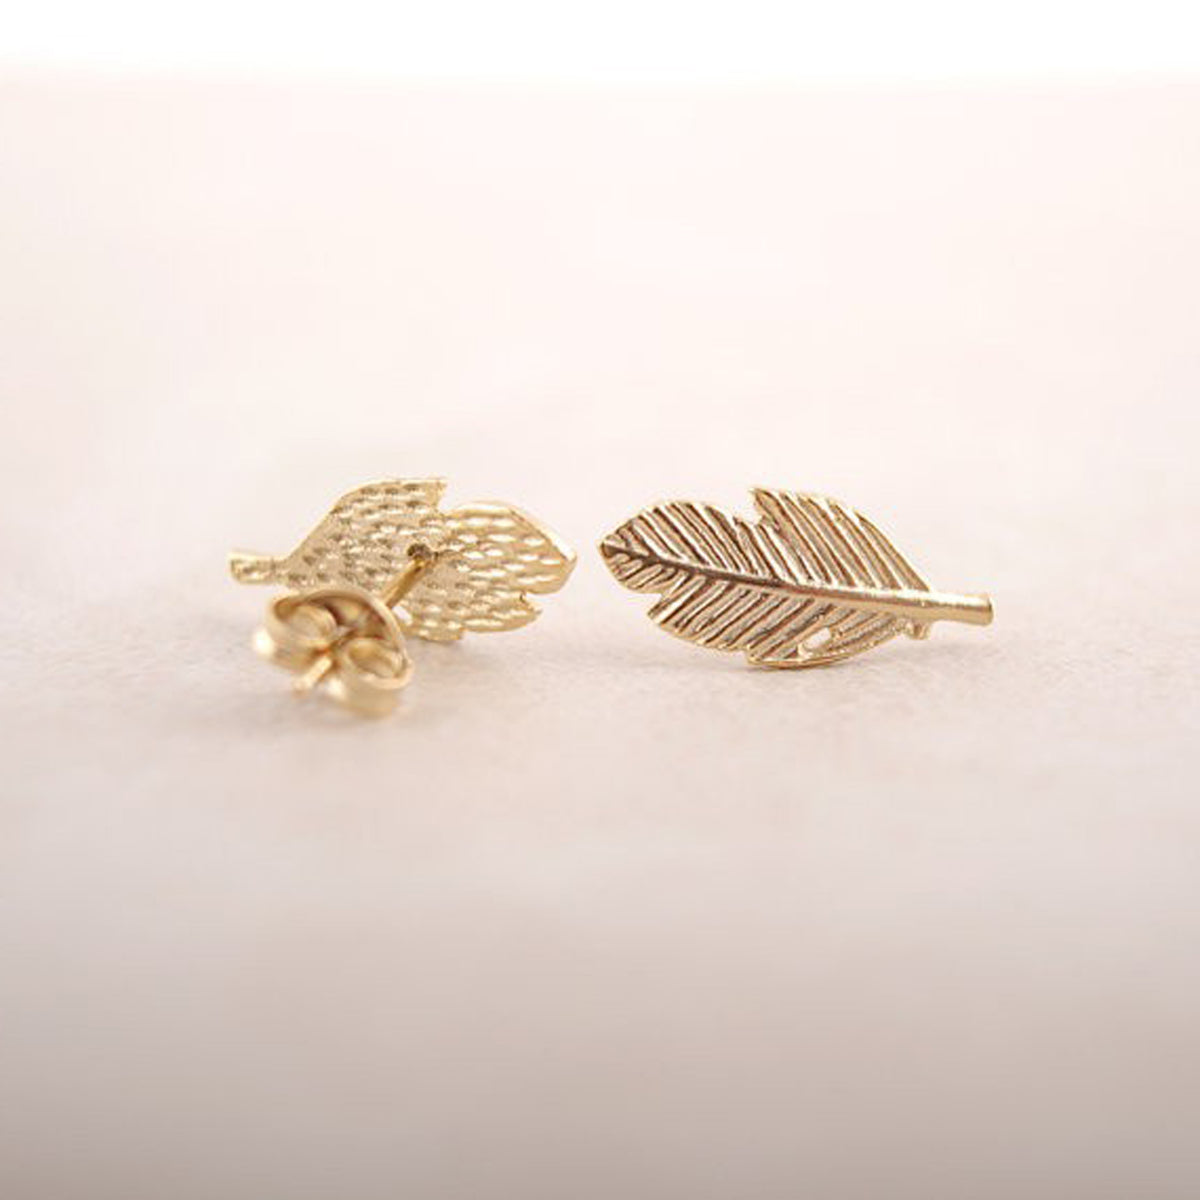 Koharu Minimalist Leaf / Feather Earring Studs – MyBodiArt